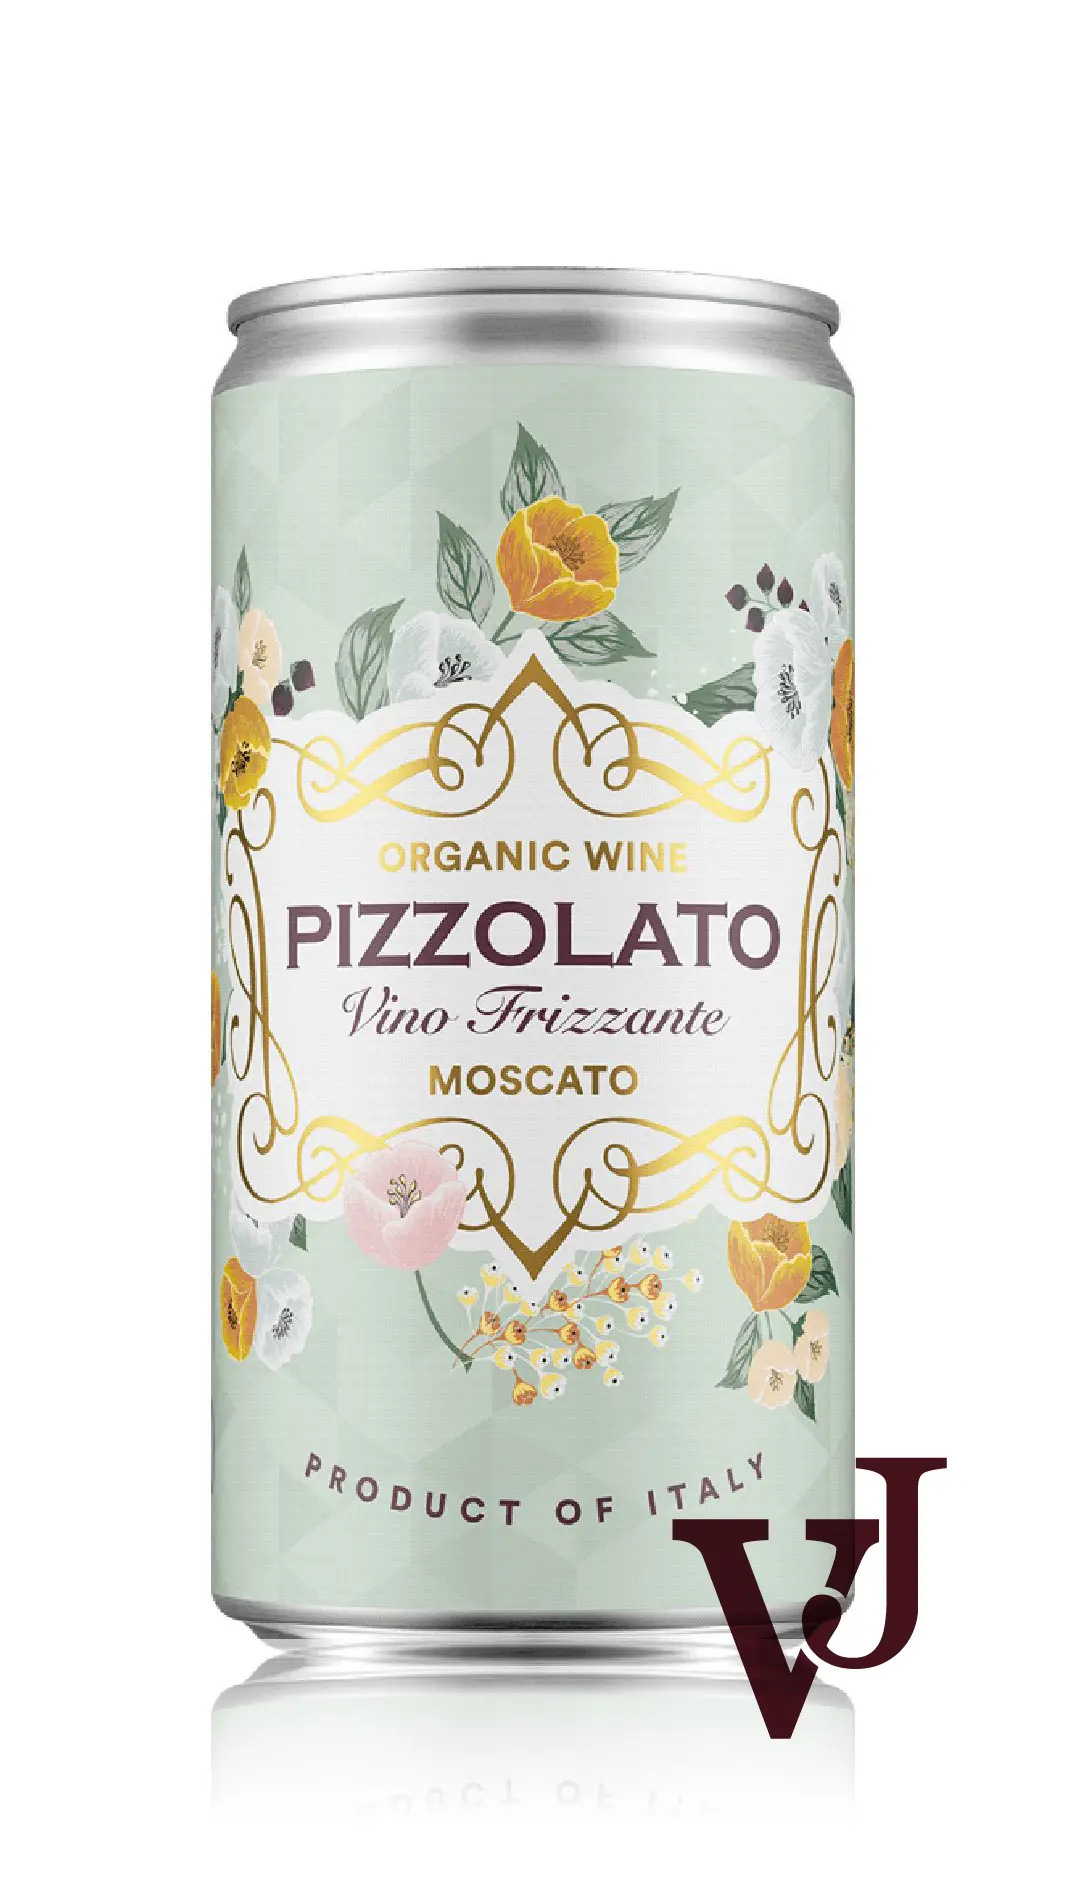 Vitt Vin - Pizzolato Moscato Frizzante 2022 artikel nummer 295114 från producenten La Cantina Pizzolato från området Italien - Vinjournalen.se